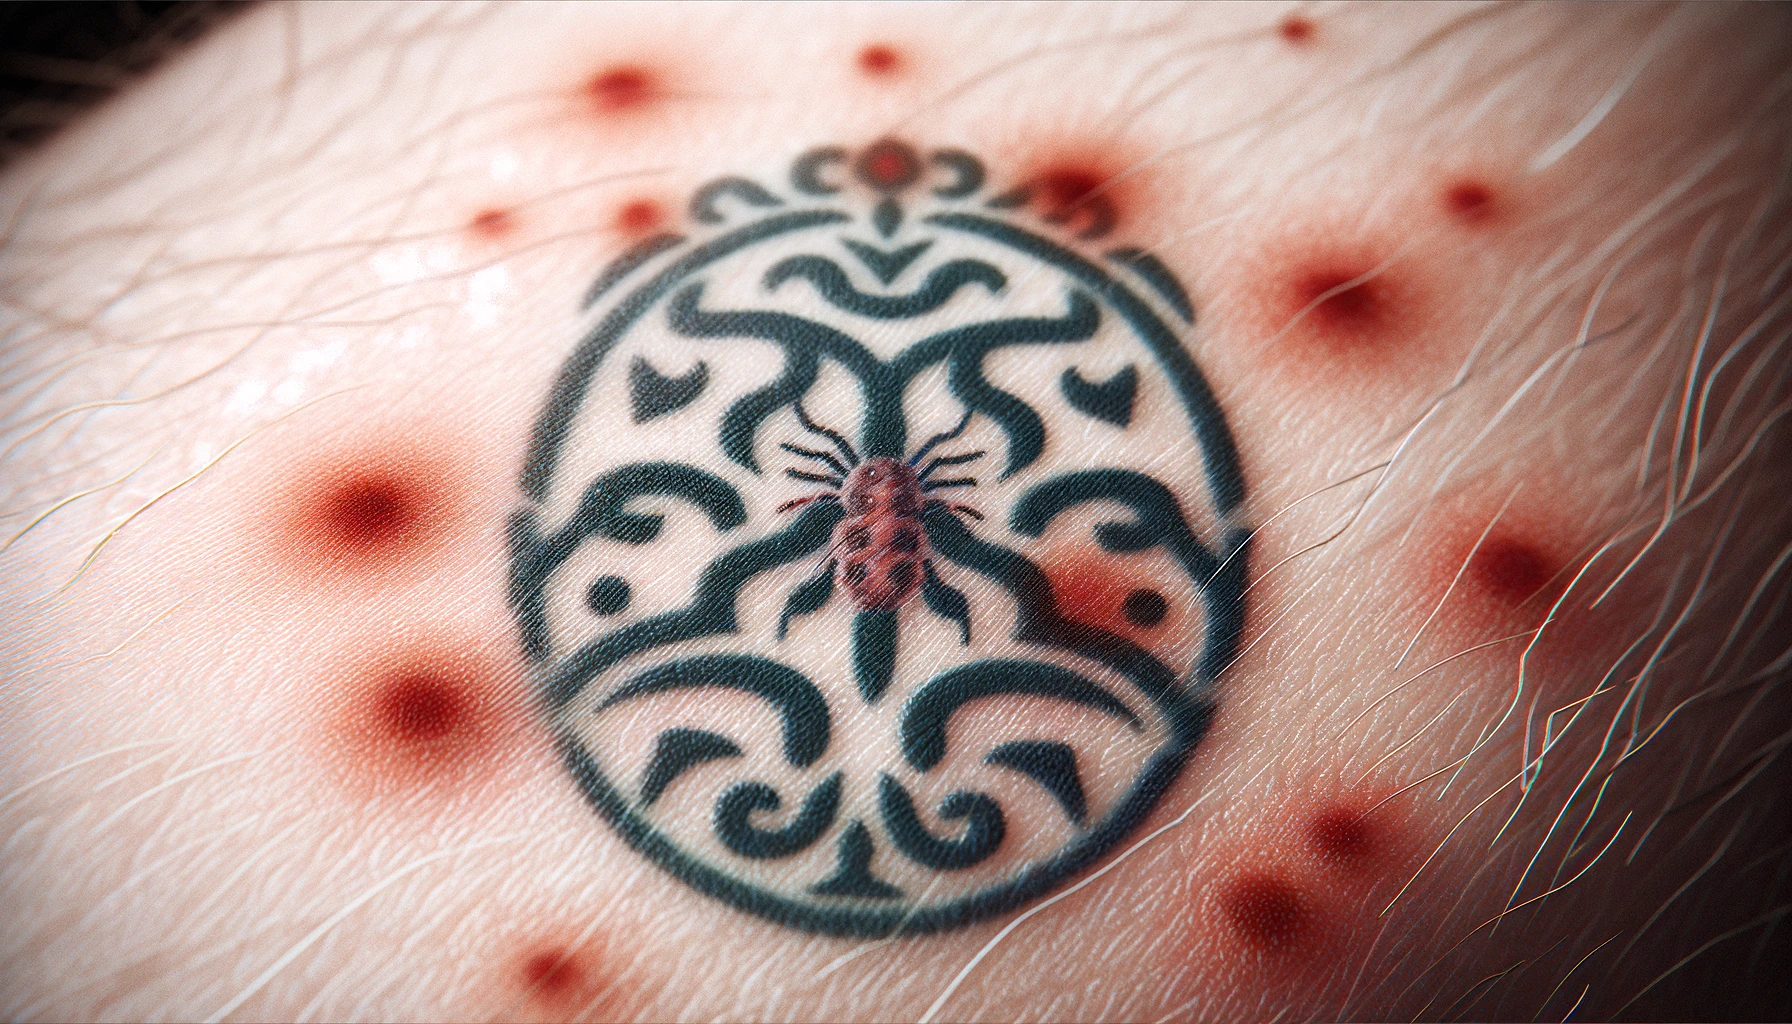 Tatuaż o wzorze tribal z centralnie umieszczonym pająkiem jest wyraźnie widoczny na skórze, otoczony przez czerwone plamy wskazujące na świeżość wykonania